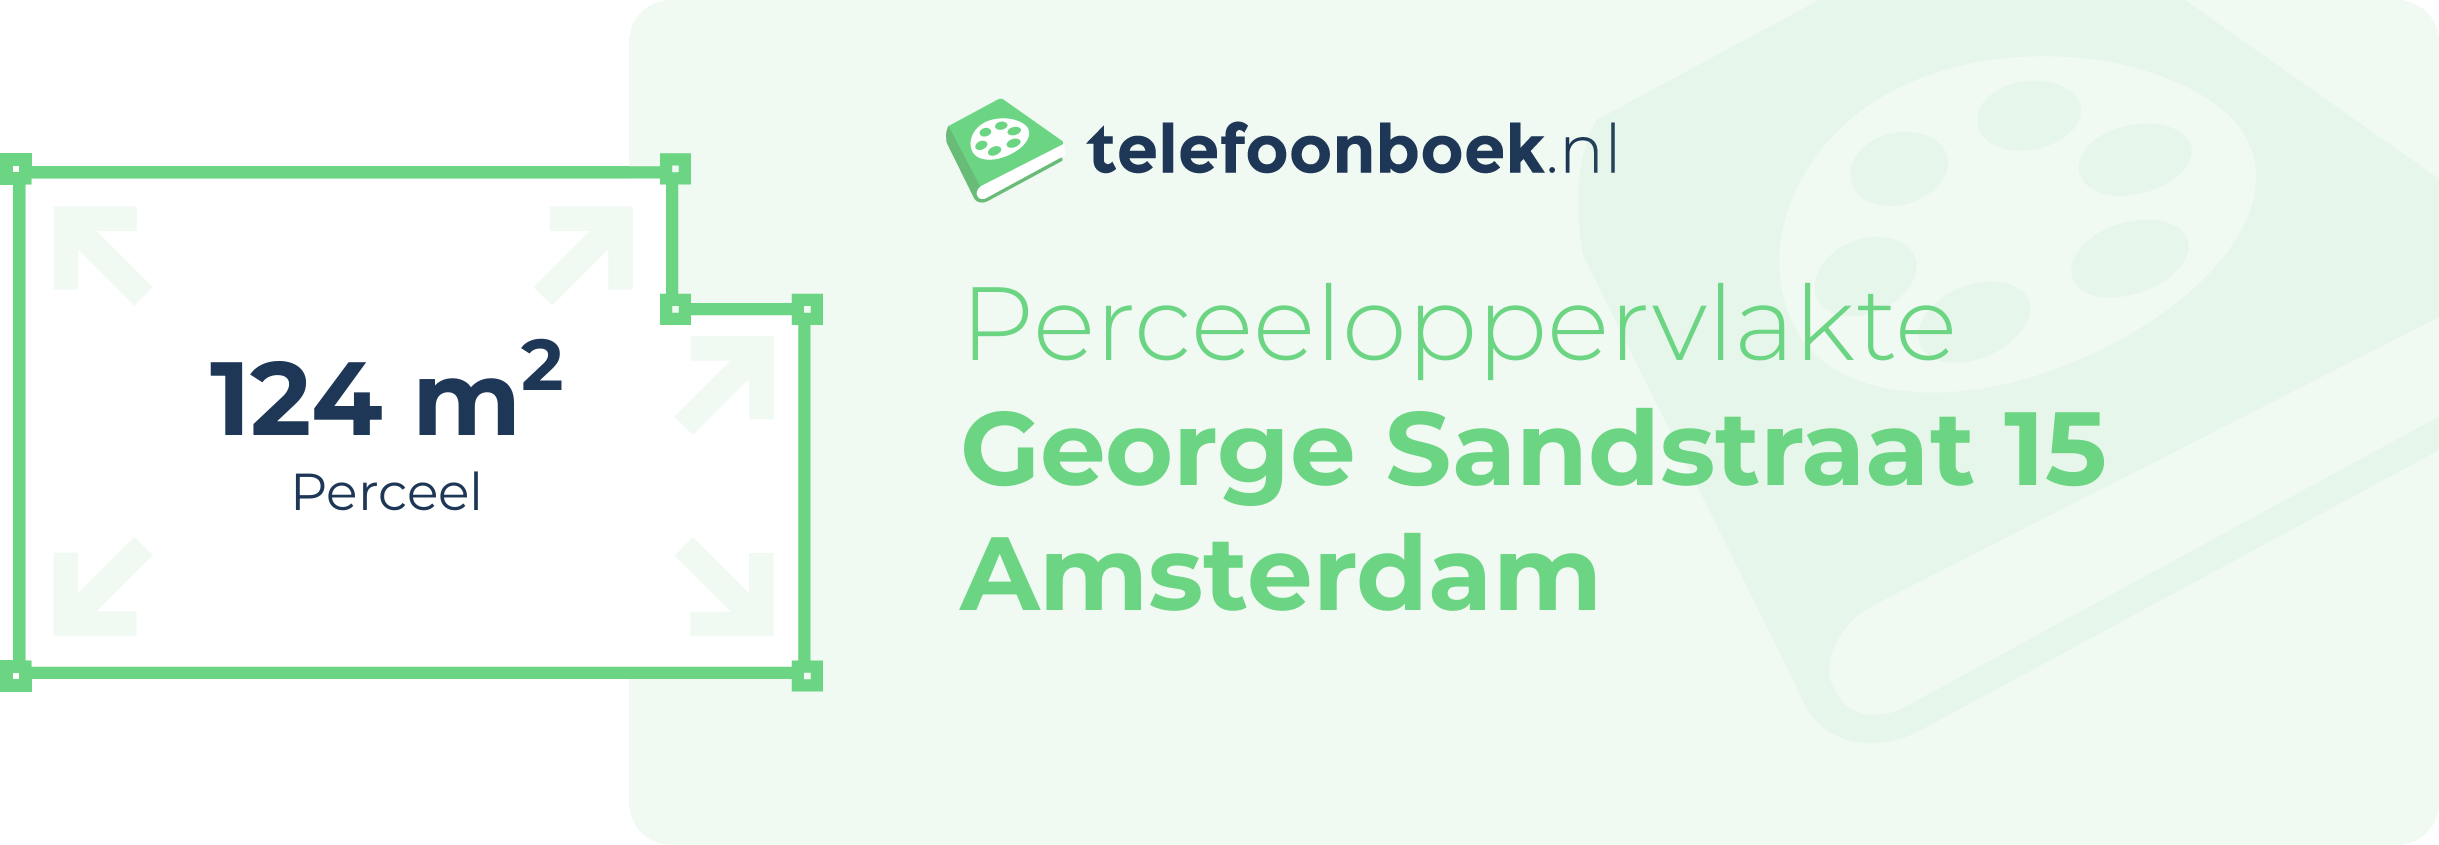 Perceeloppervlakte George Sandstraat 15 Amsterdam